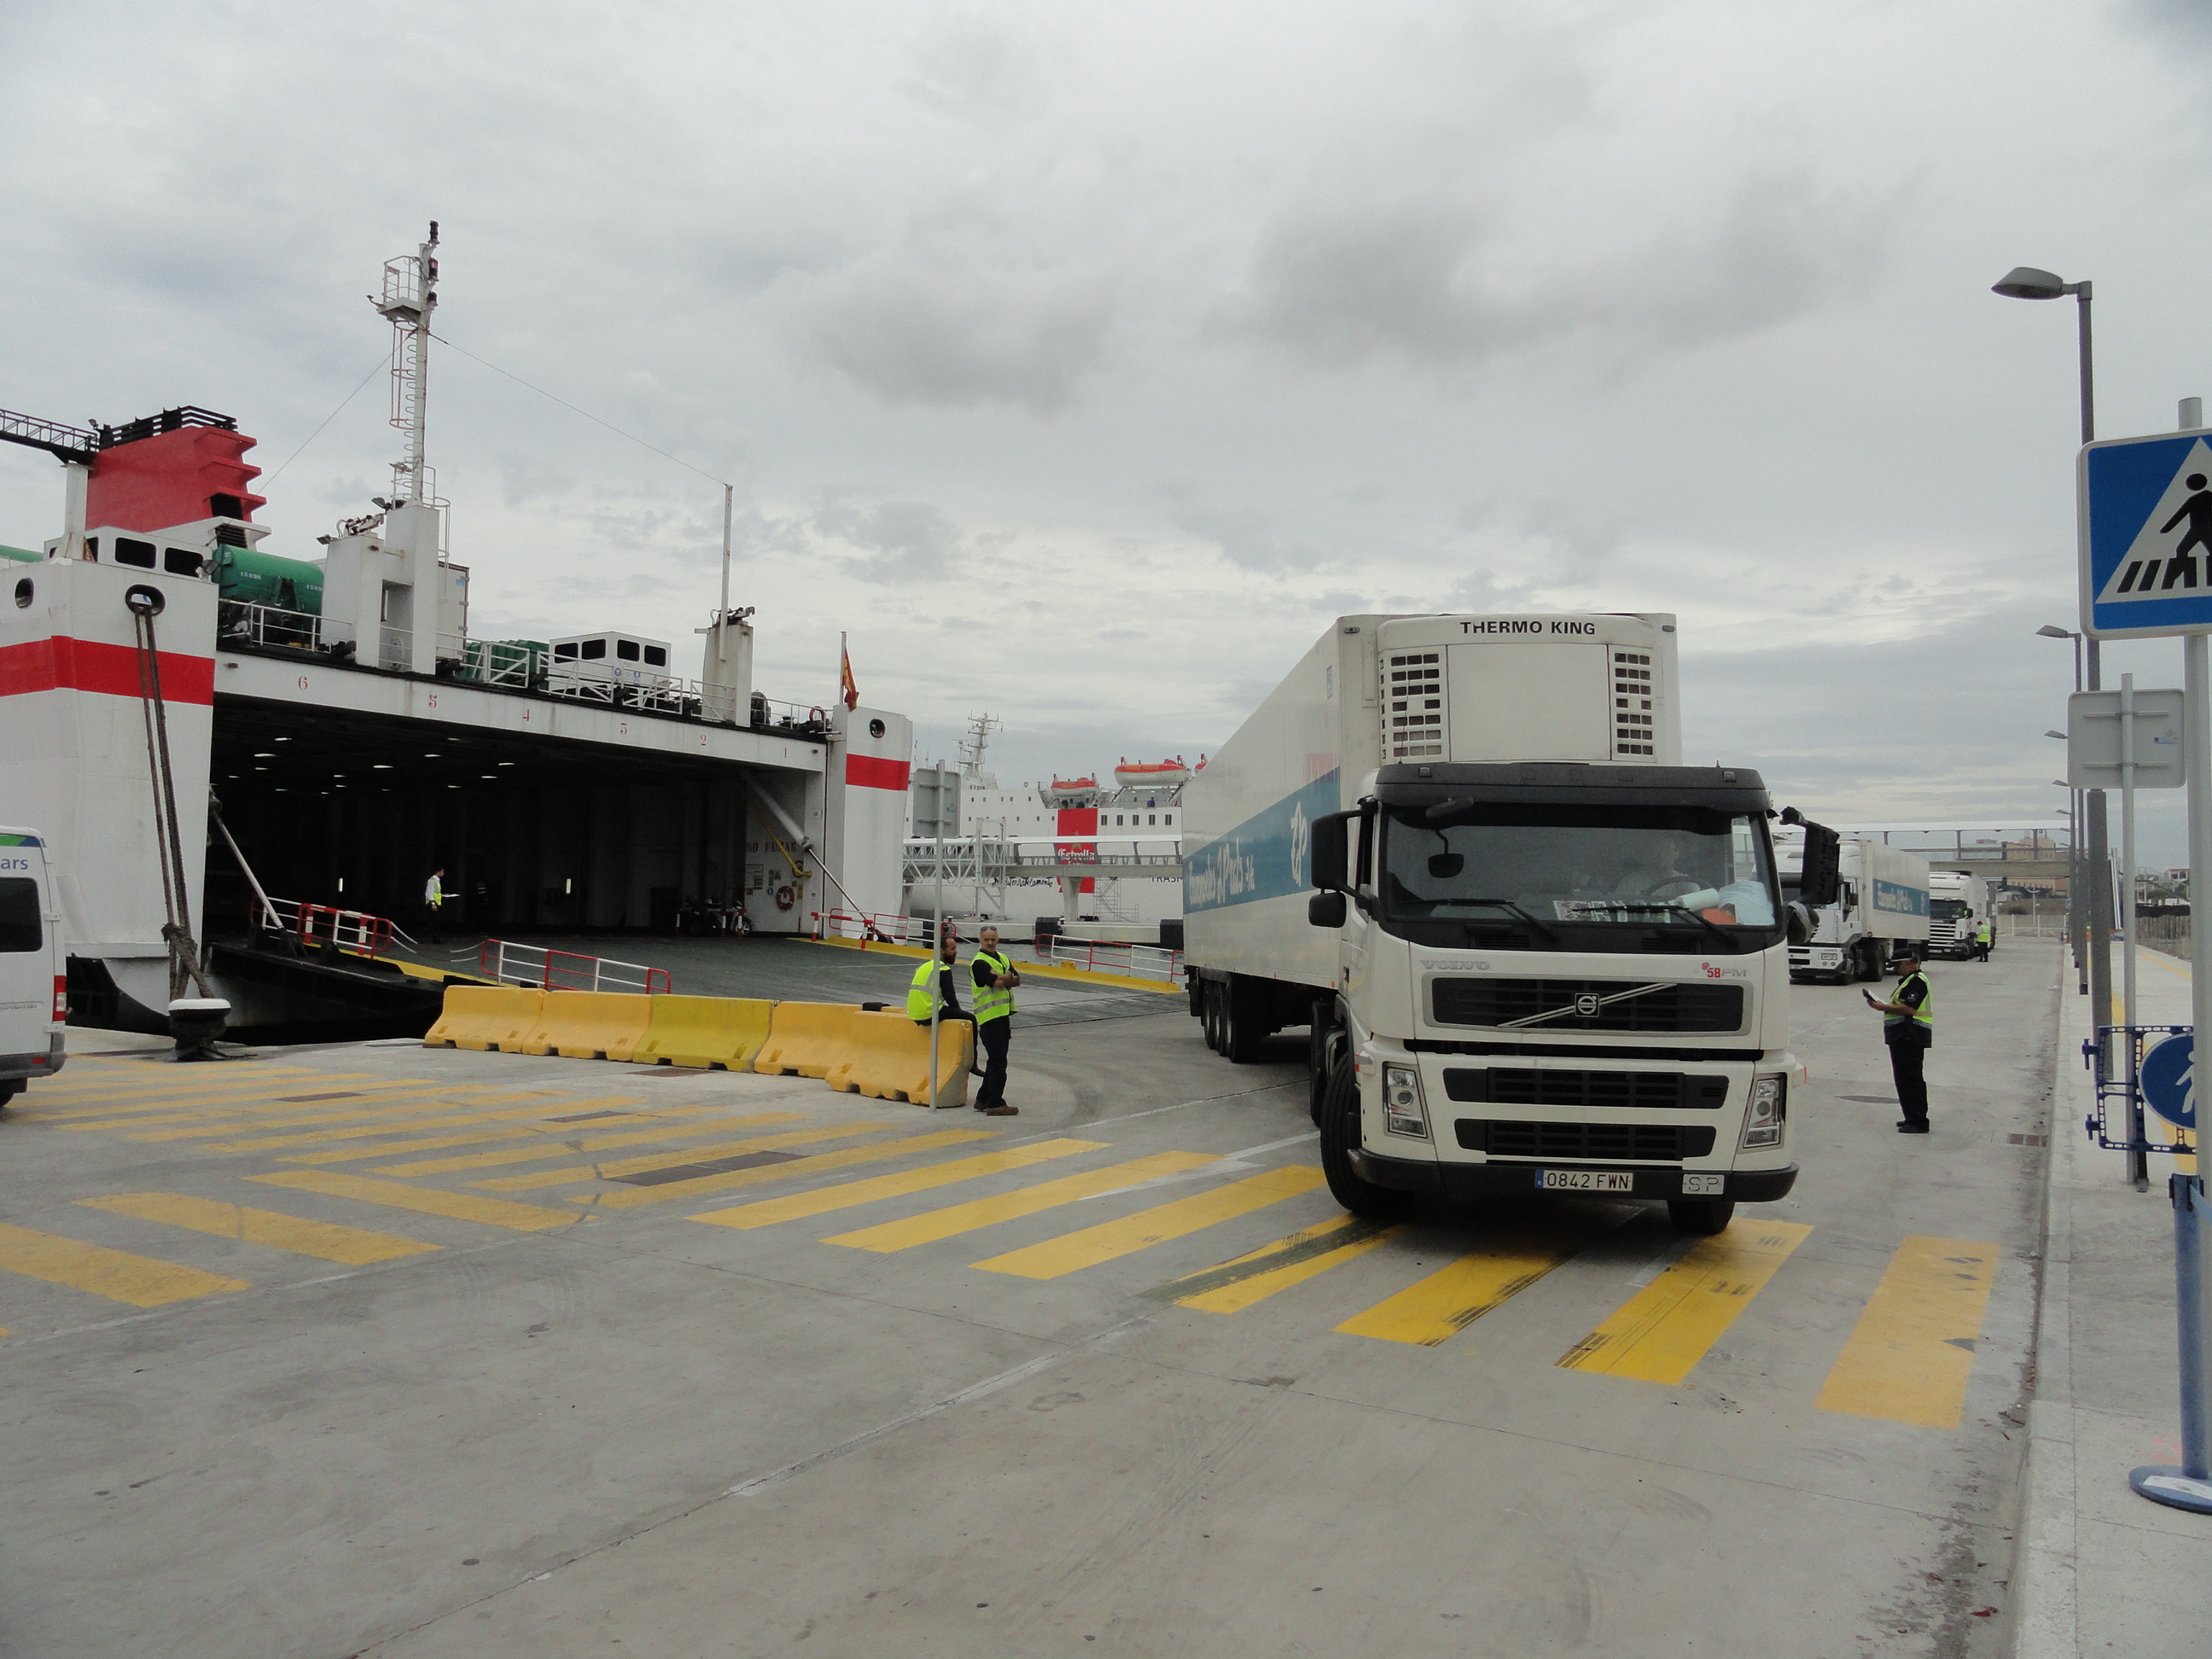 Los puertos de Baleares reciben 13 millones de mercancías al año